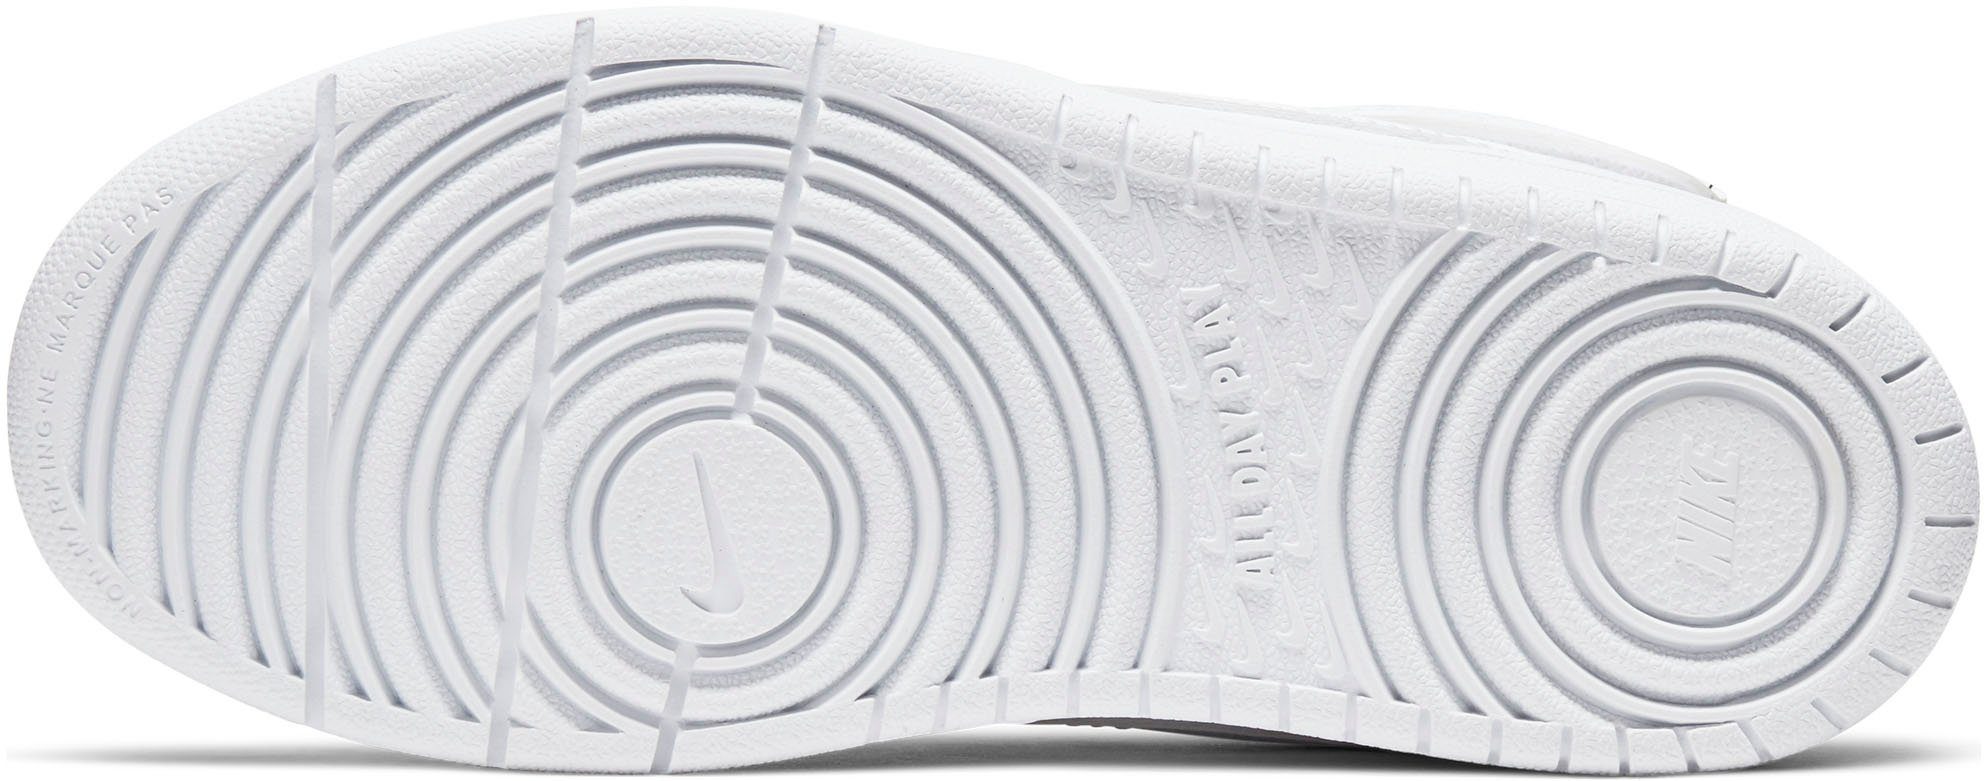 Air Sneaker 1 2 COURT Design auf den Sportswear BOROUGH des MID Spuren Nike Force